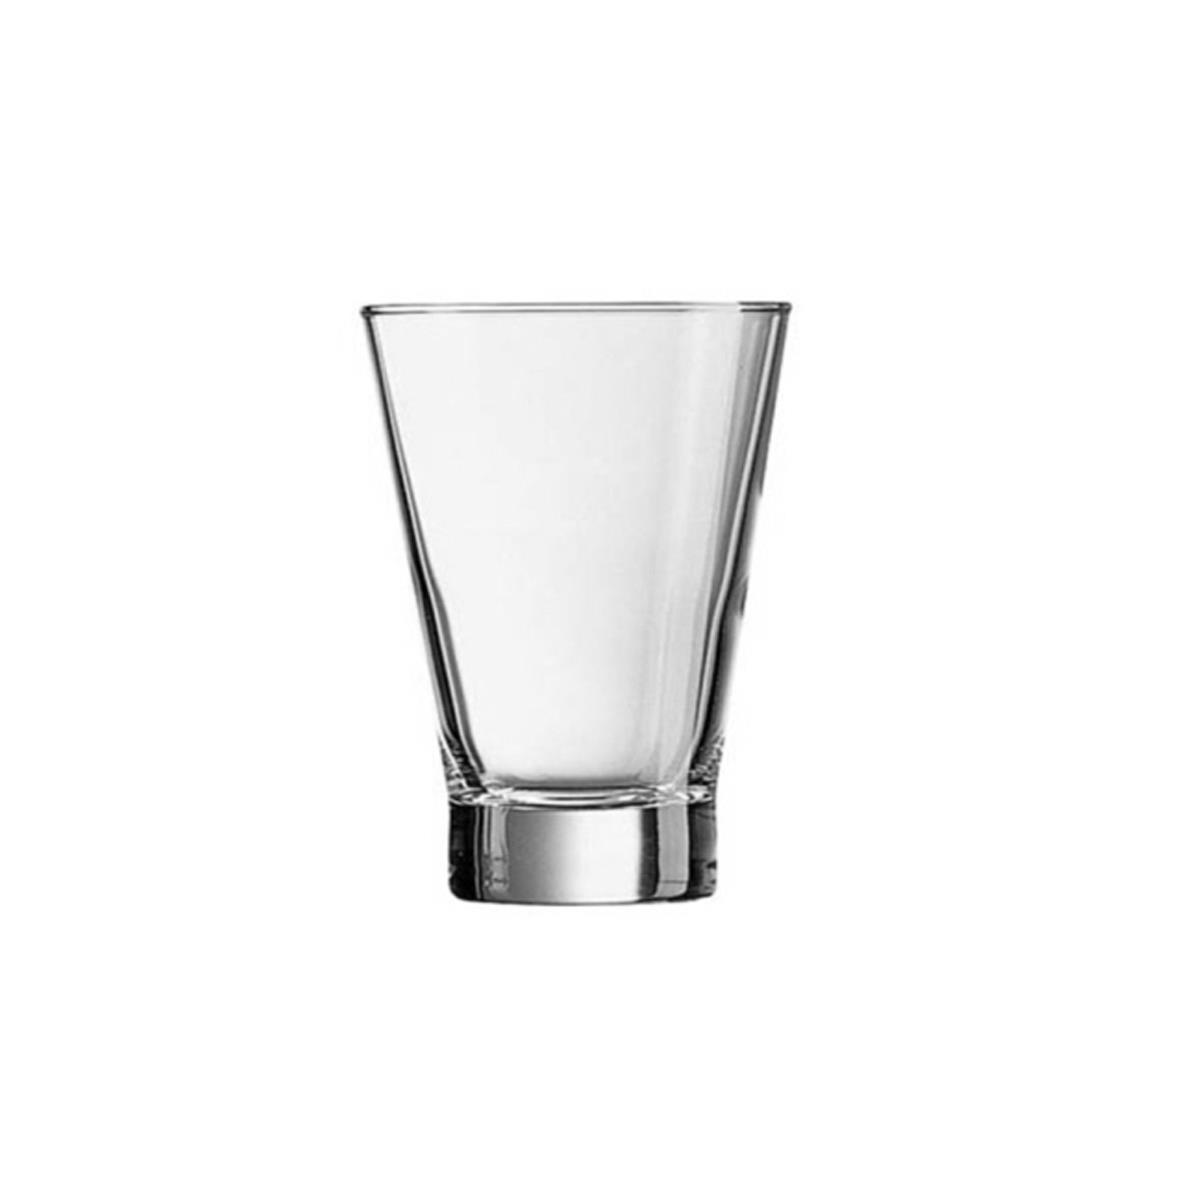 Shetlandglas met een inhoud van 15 cl